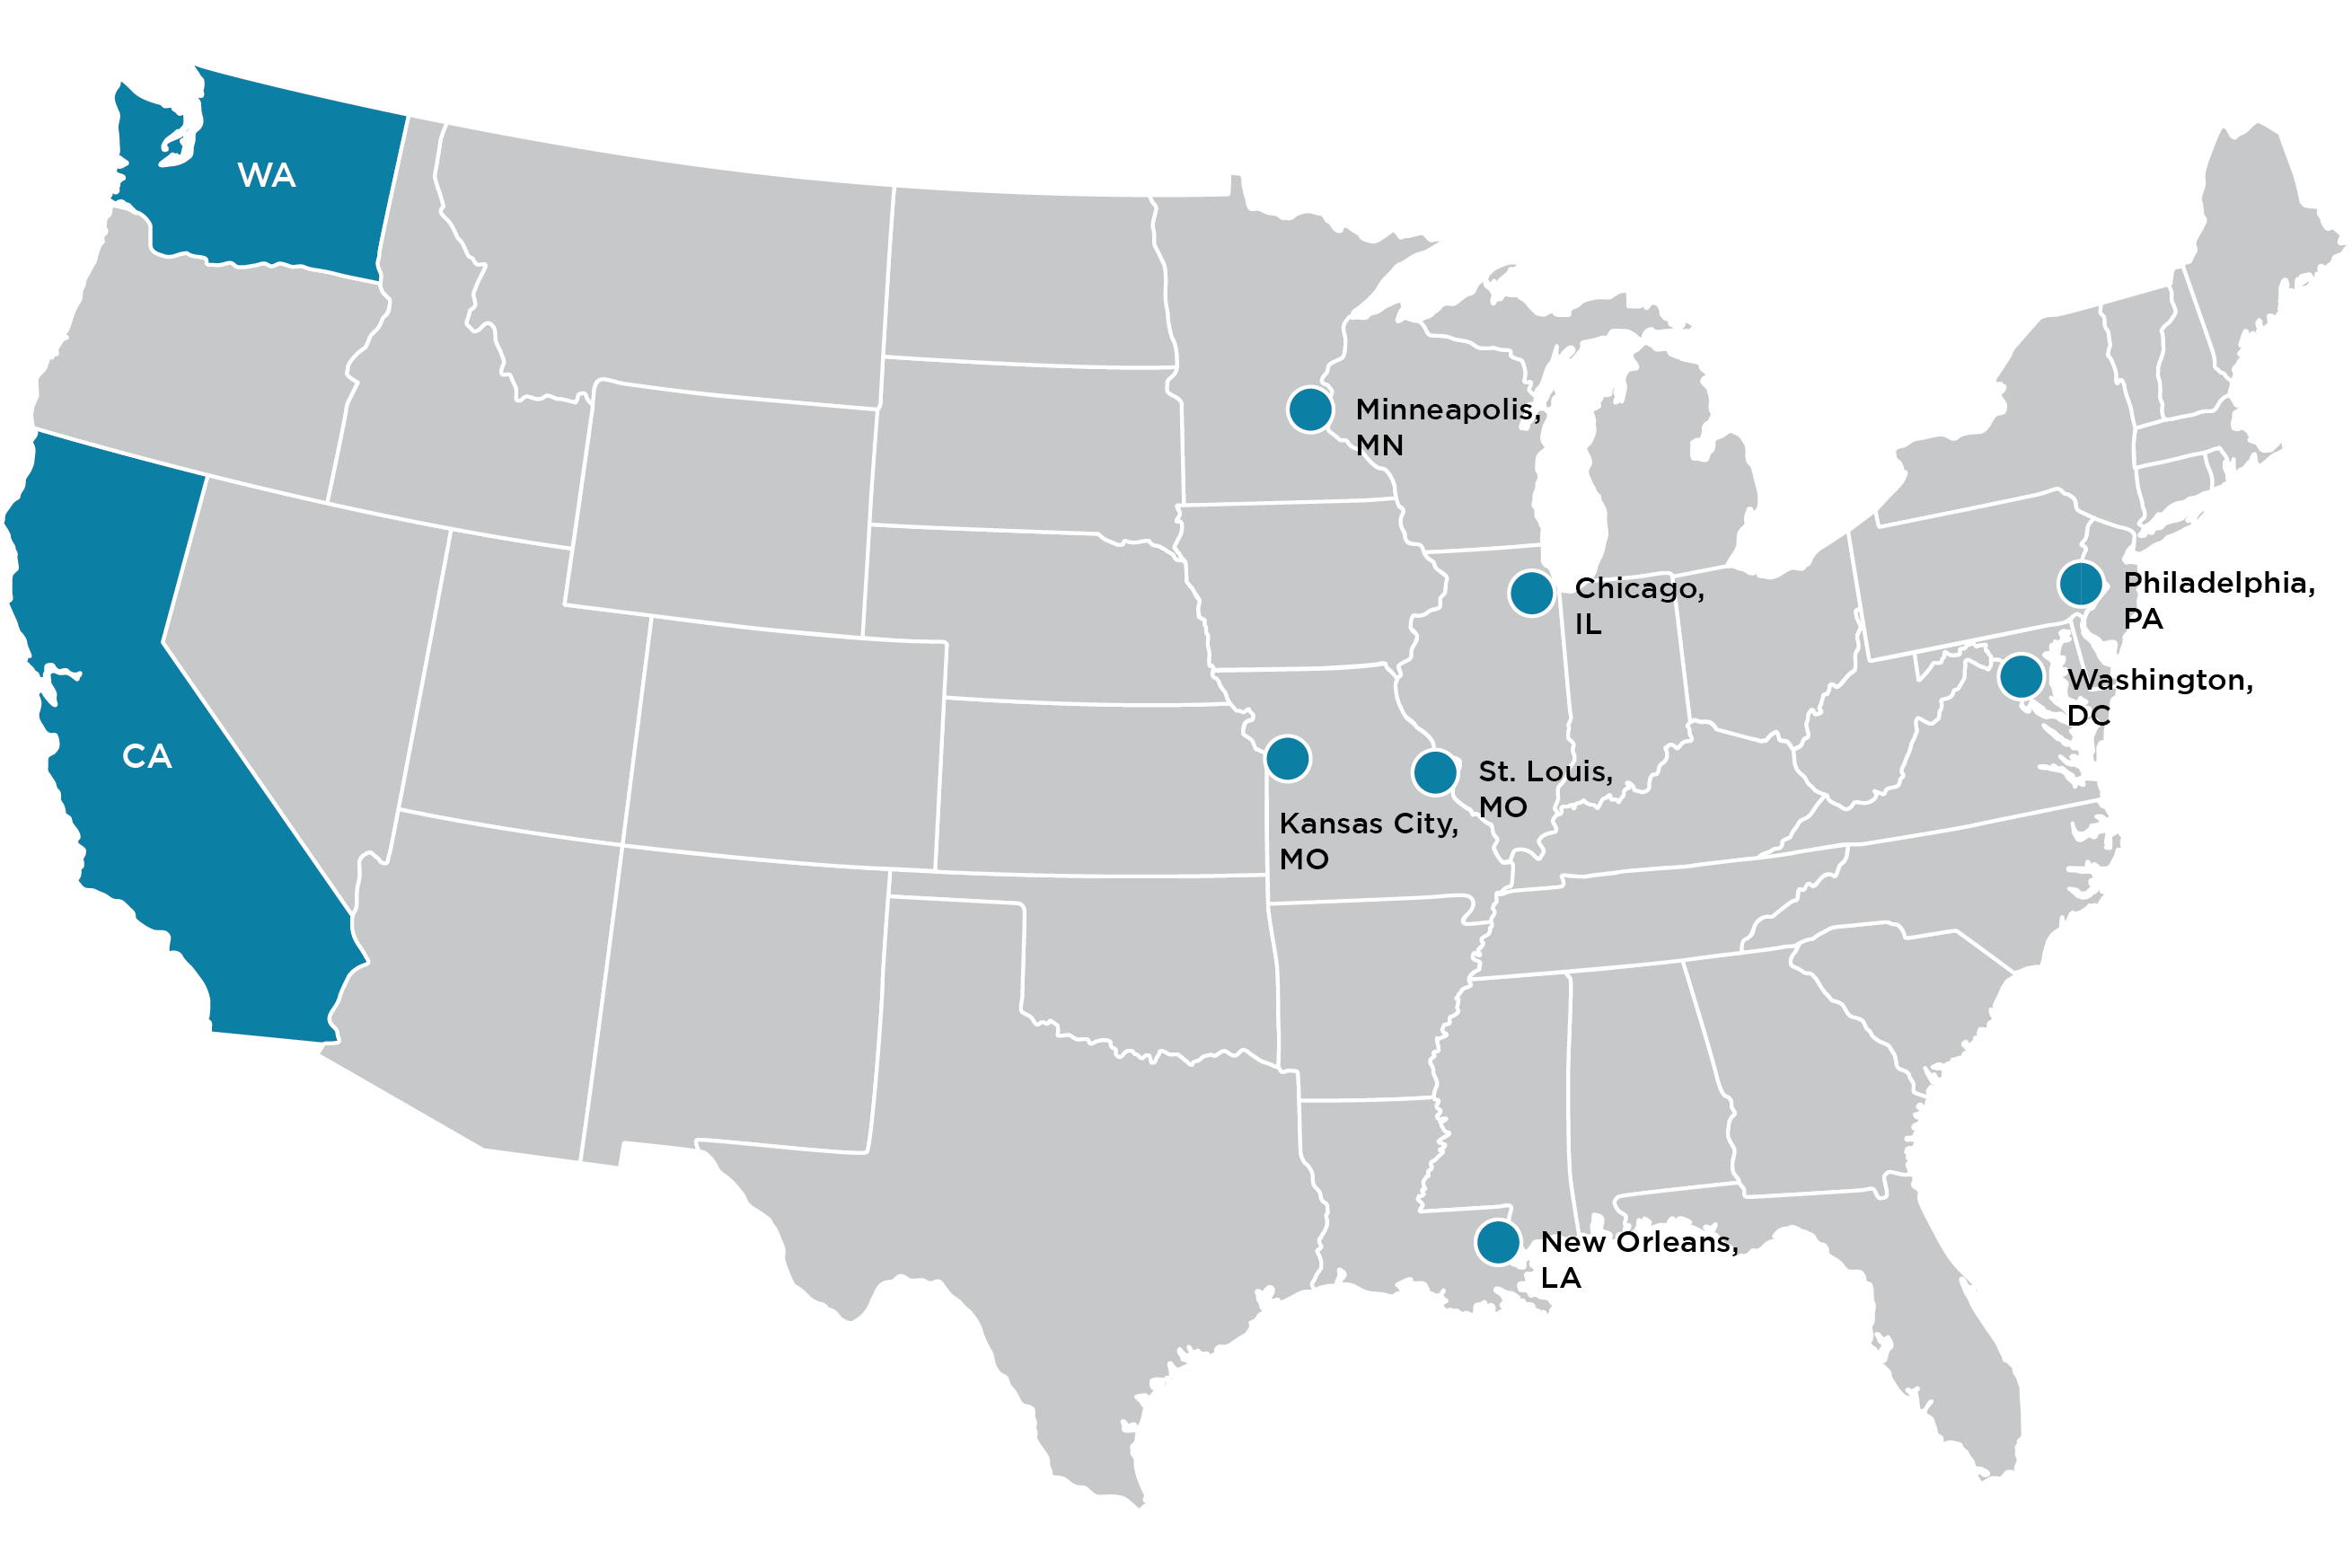 The nine SEBP locations: California; Washington State; Chicago, IL; New Orleans, LA; St Louis, MO; Kansas City, MO; Minneapolis, MN; Washington, DC; Philadelphia, PA